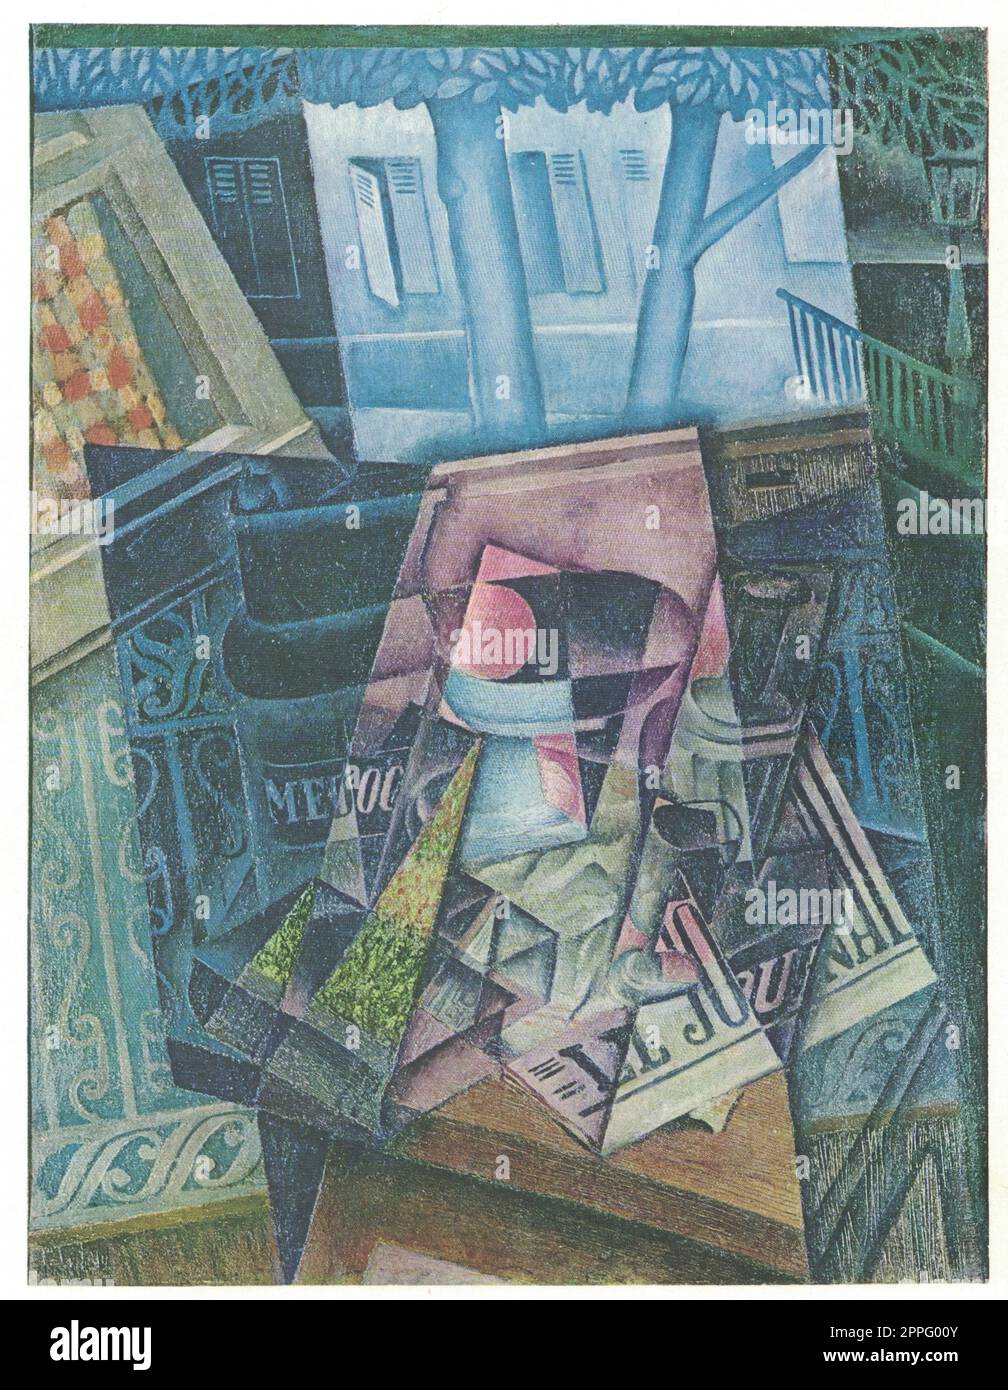 Stille Leben vor offenem Fenster, Platz Ravignan. Gemälde von Juan Gris. Öl auf Leinwand, synthetischer Kubismus, Stillleben. Stockfoto